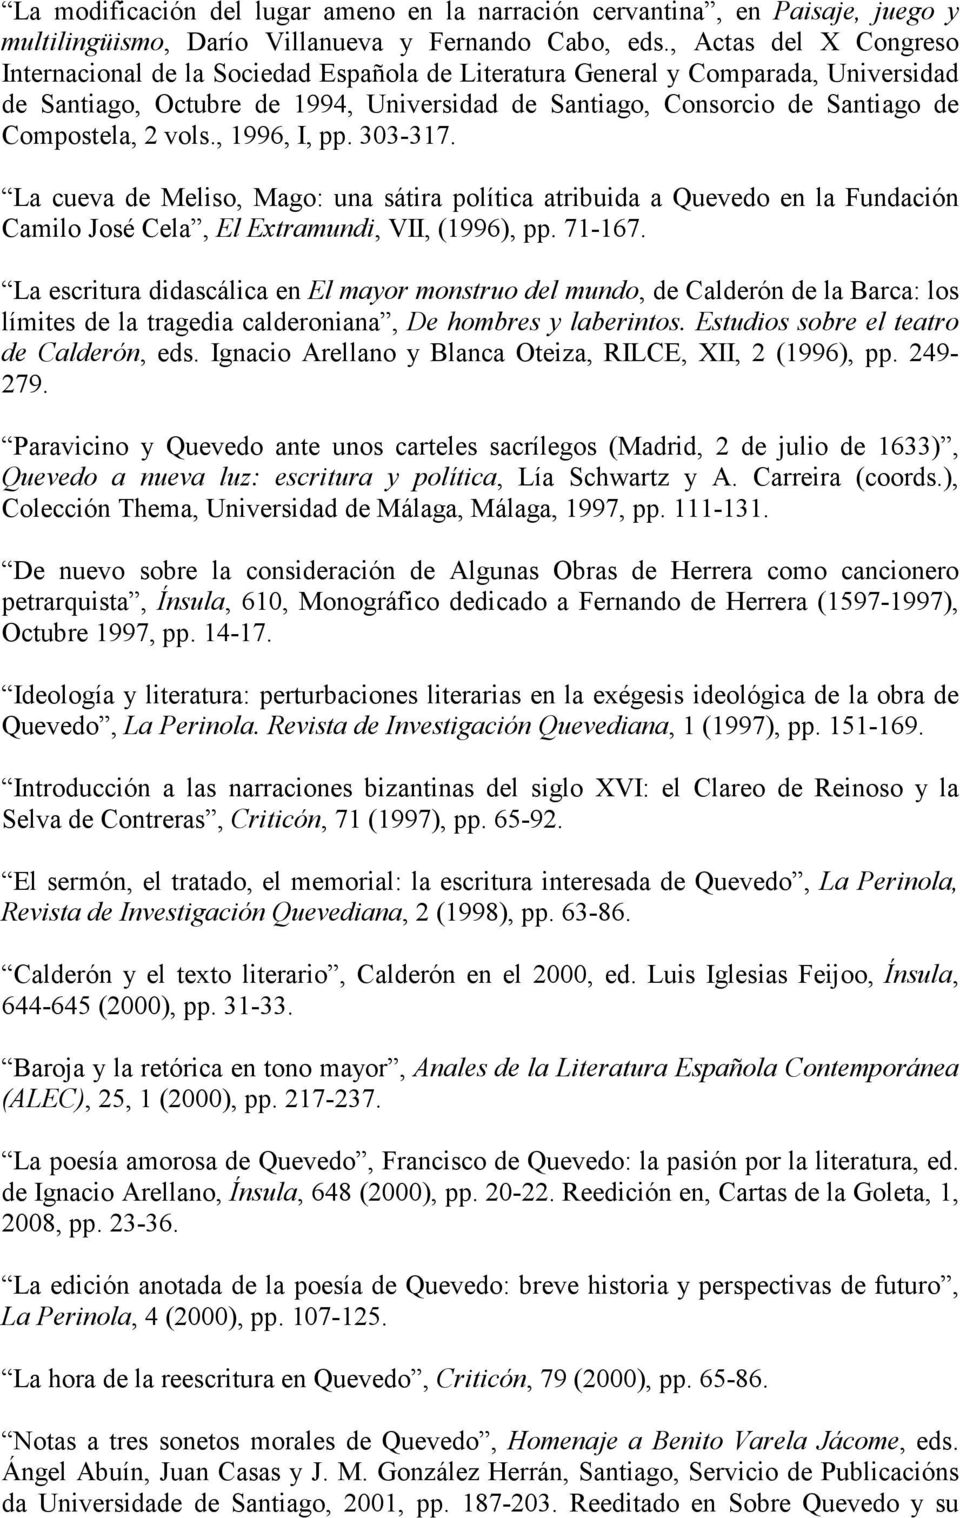 2 vols., 1996, I, pp. 303-317. La cueva de Meliso, Mago: una sátira política atribuida a Quevedo en la Fundación Camilo José Cela, El Extramundi, VII, (1996), pp. 71-167.